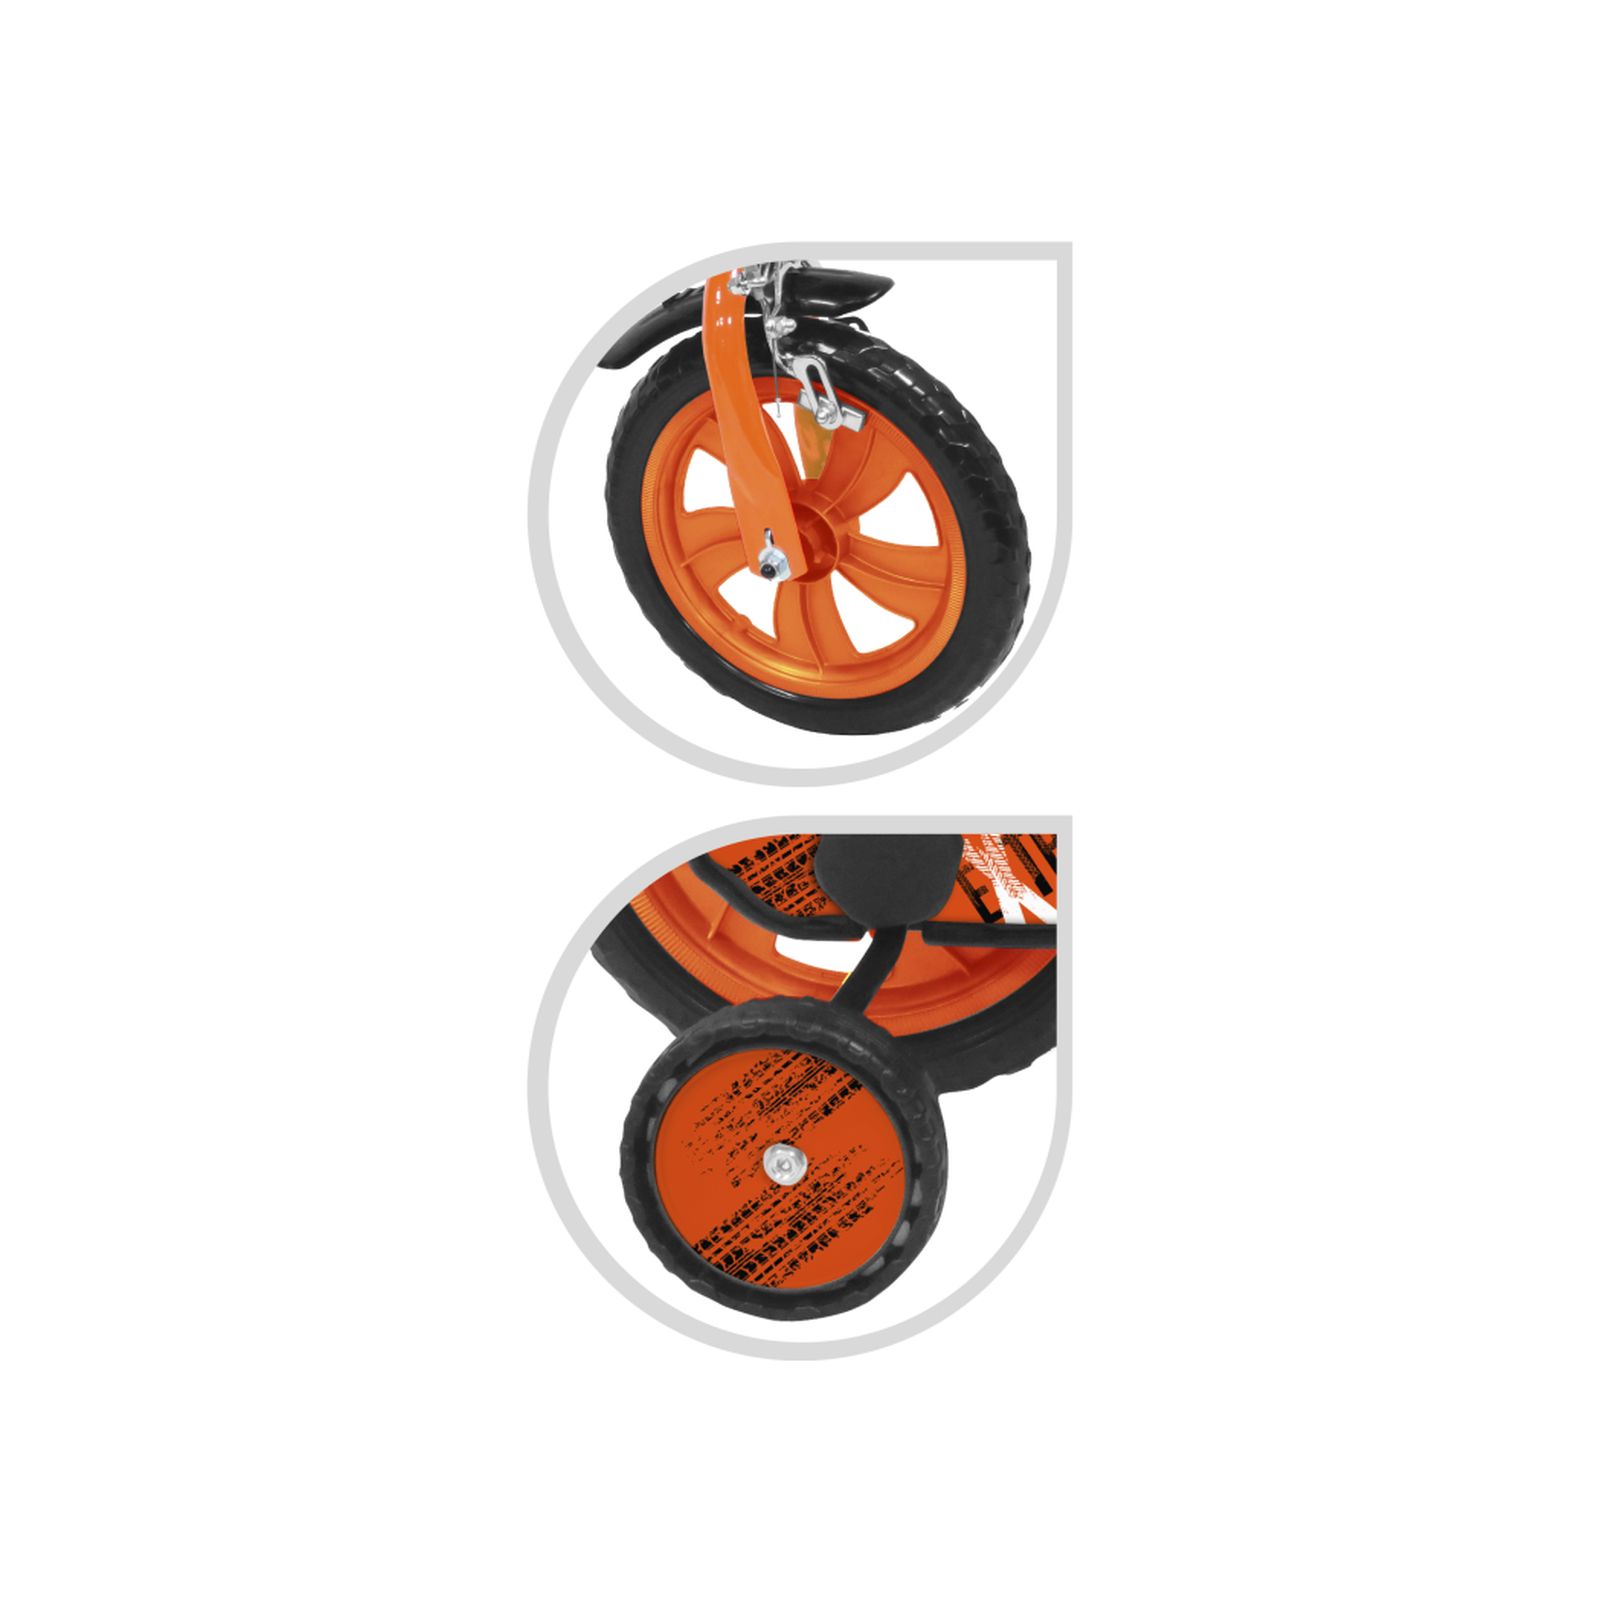 Bicicletta 12" - arancione - freno caliper frontale - borraccia e mascherina frontale incluse - adatta per  bambini dai 3-5 anni - SUN&SPORT